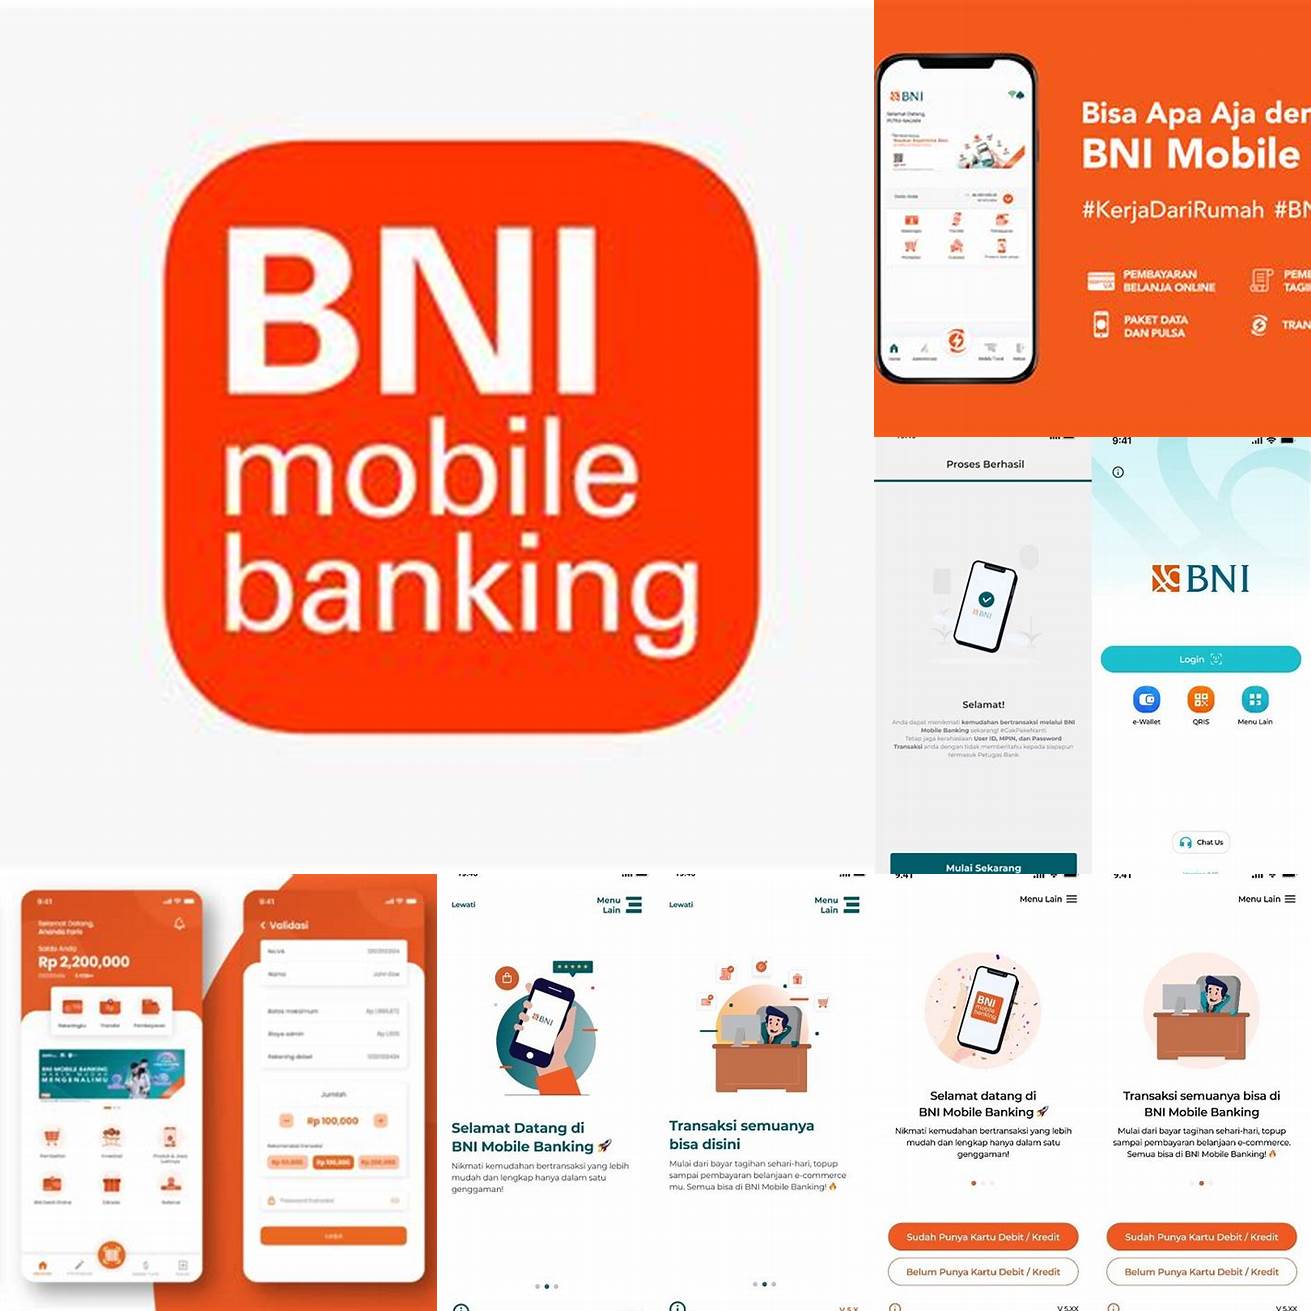 Pertama-tama download aplikasi BNI Mobile Banking di App Store atau Google Play Store